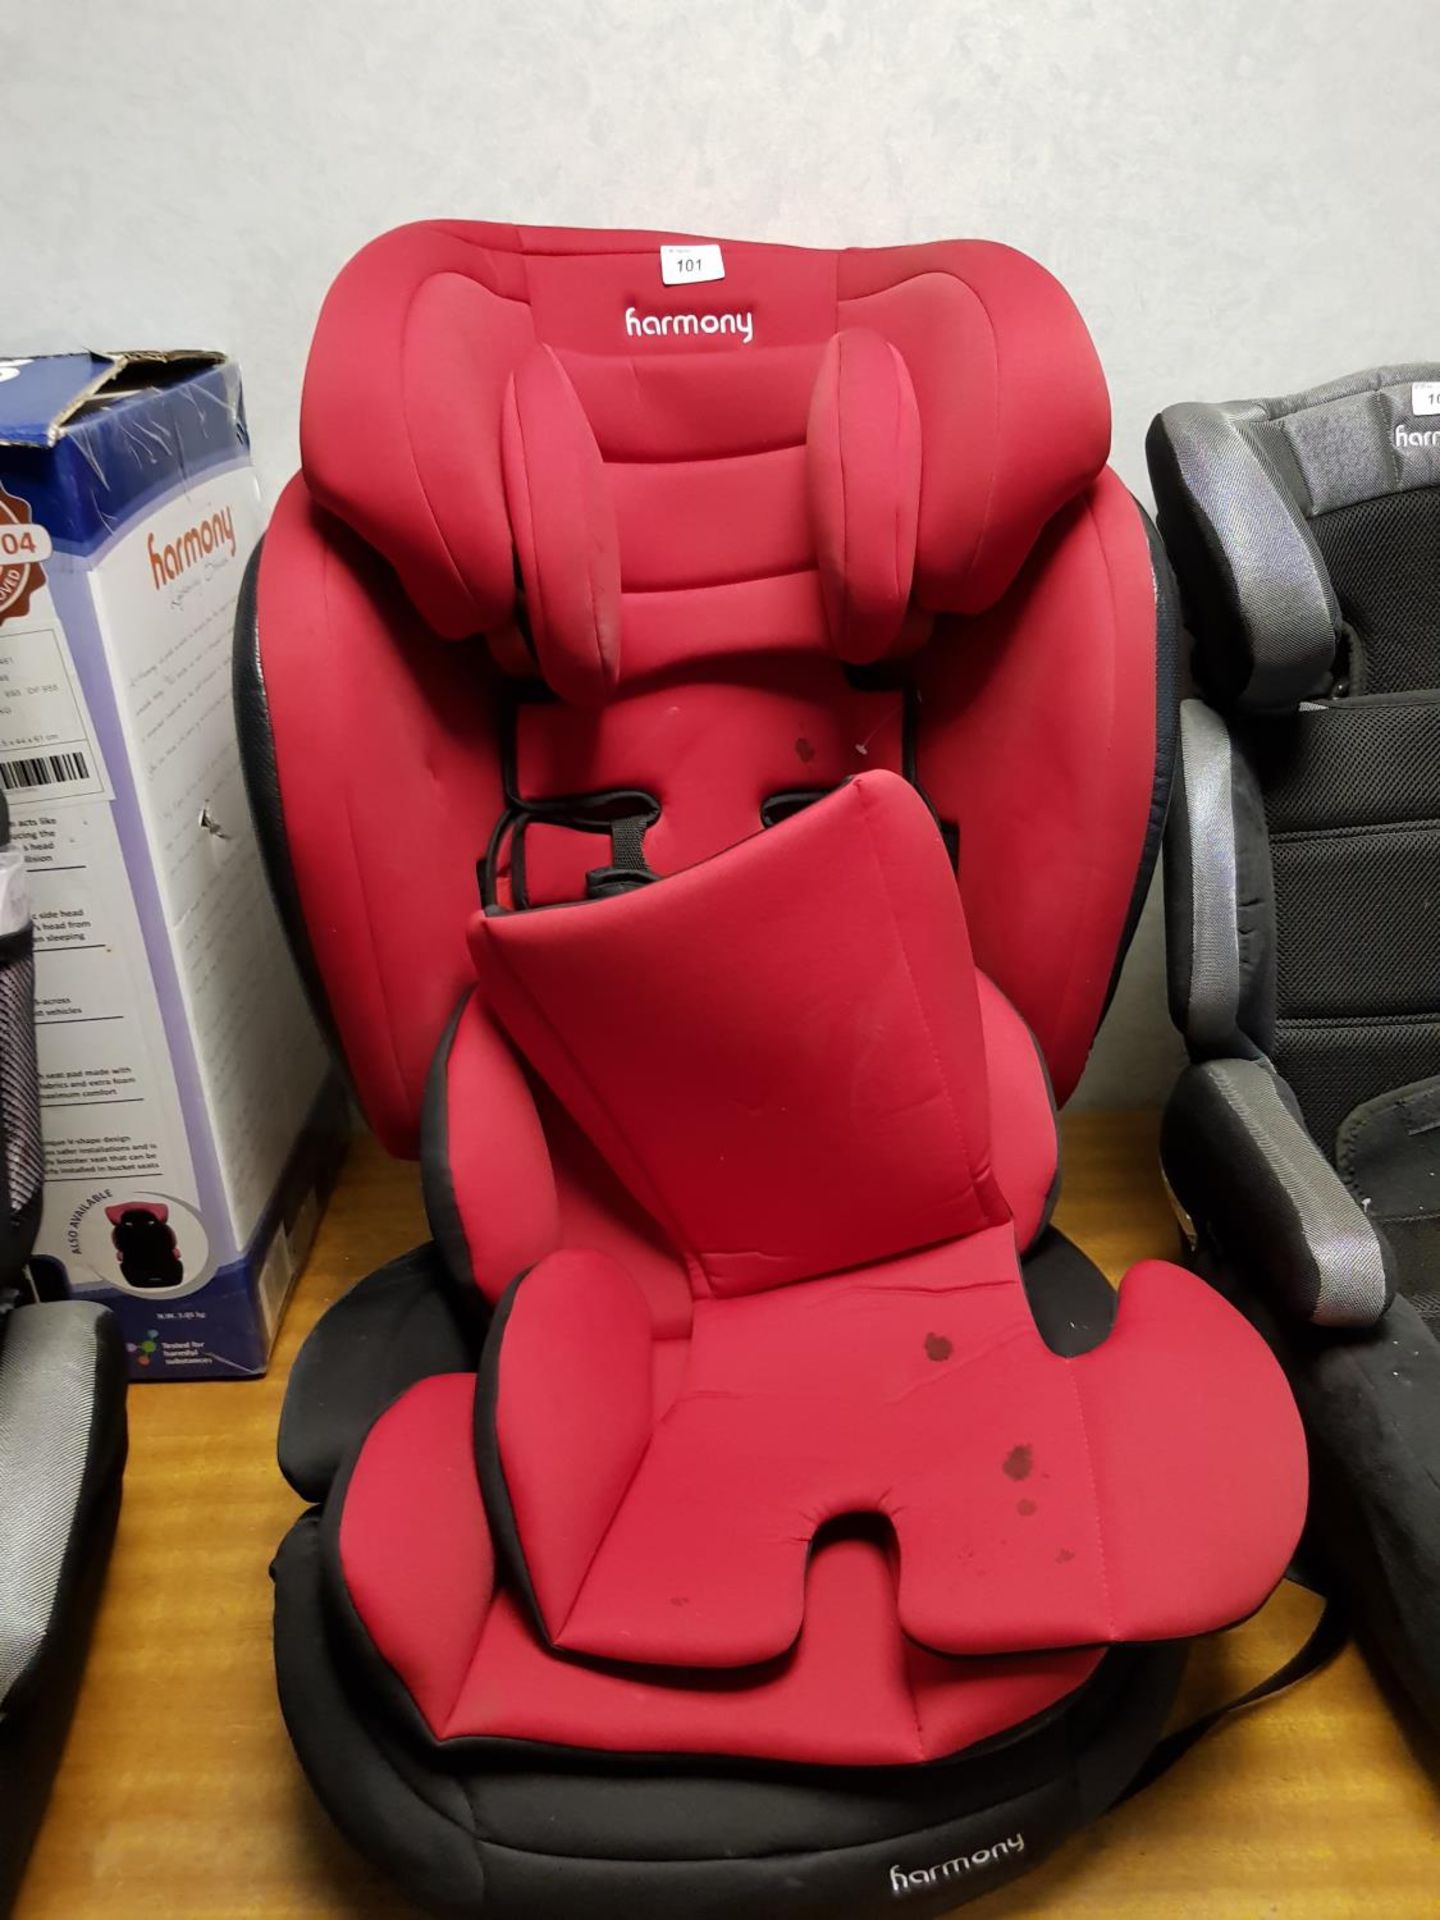 Harmony Car Seat – Red (no box)